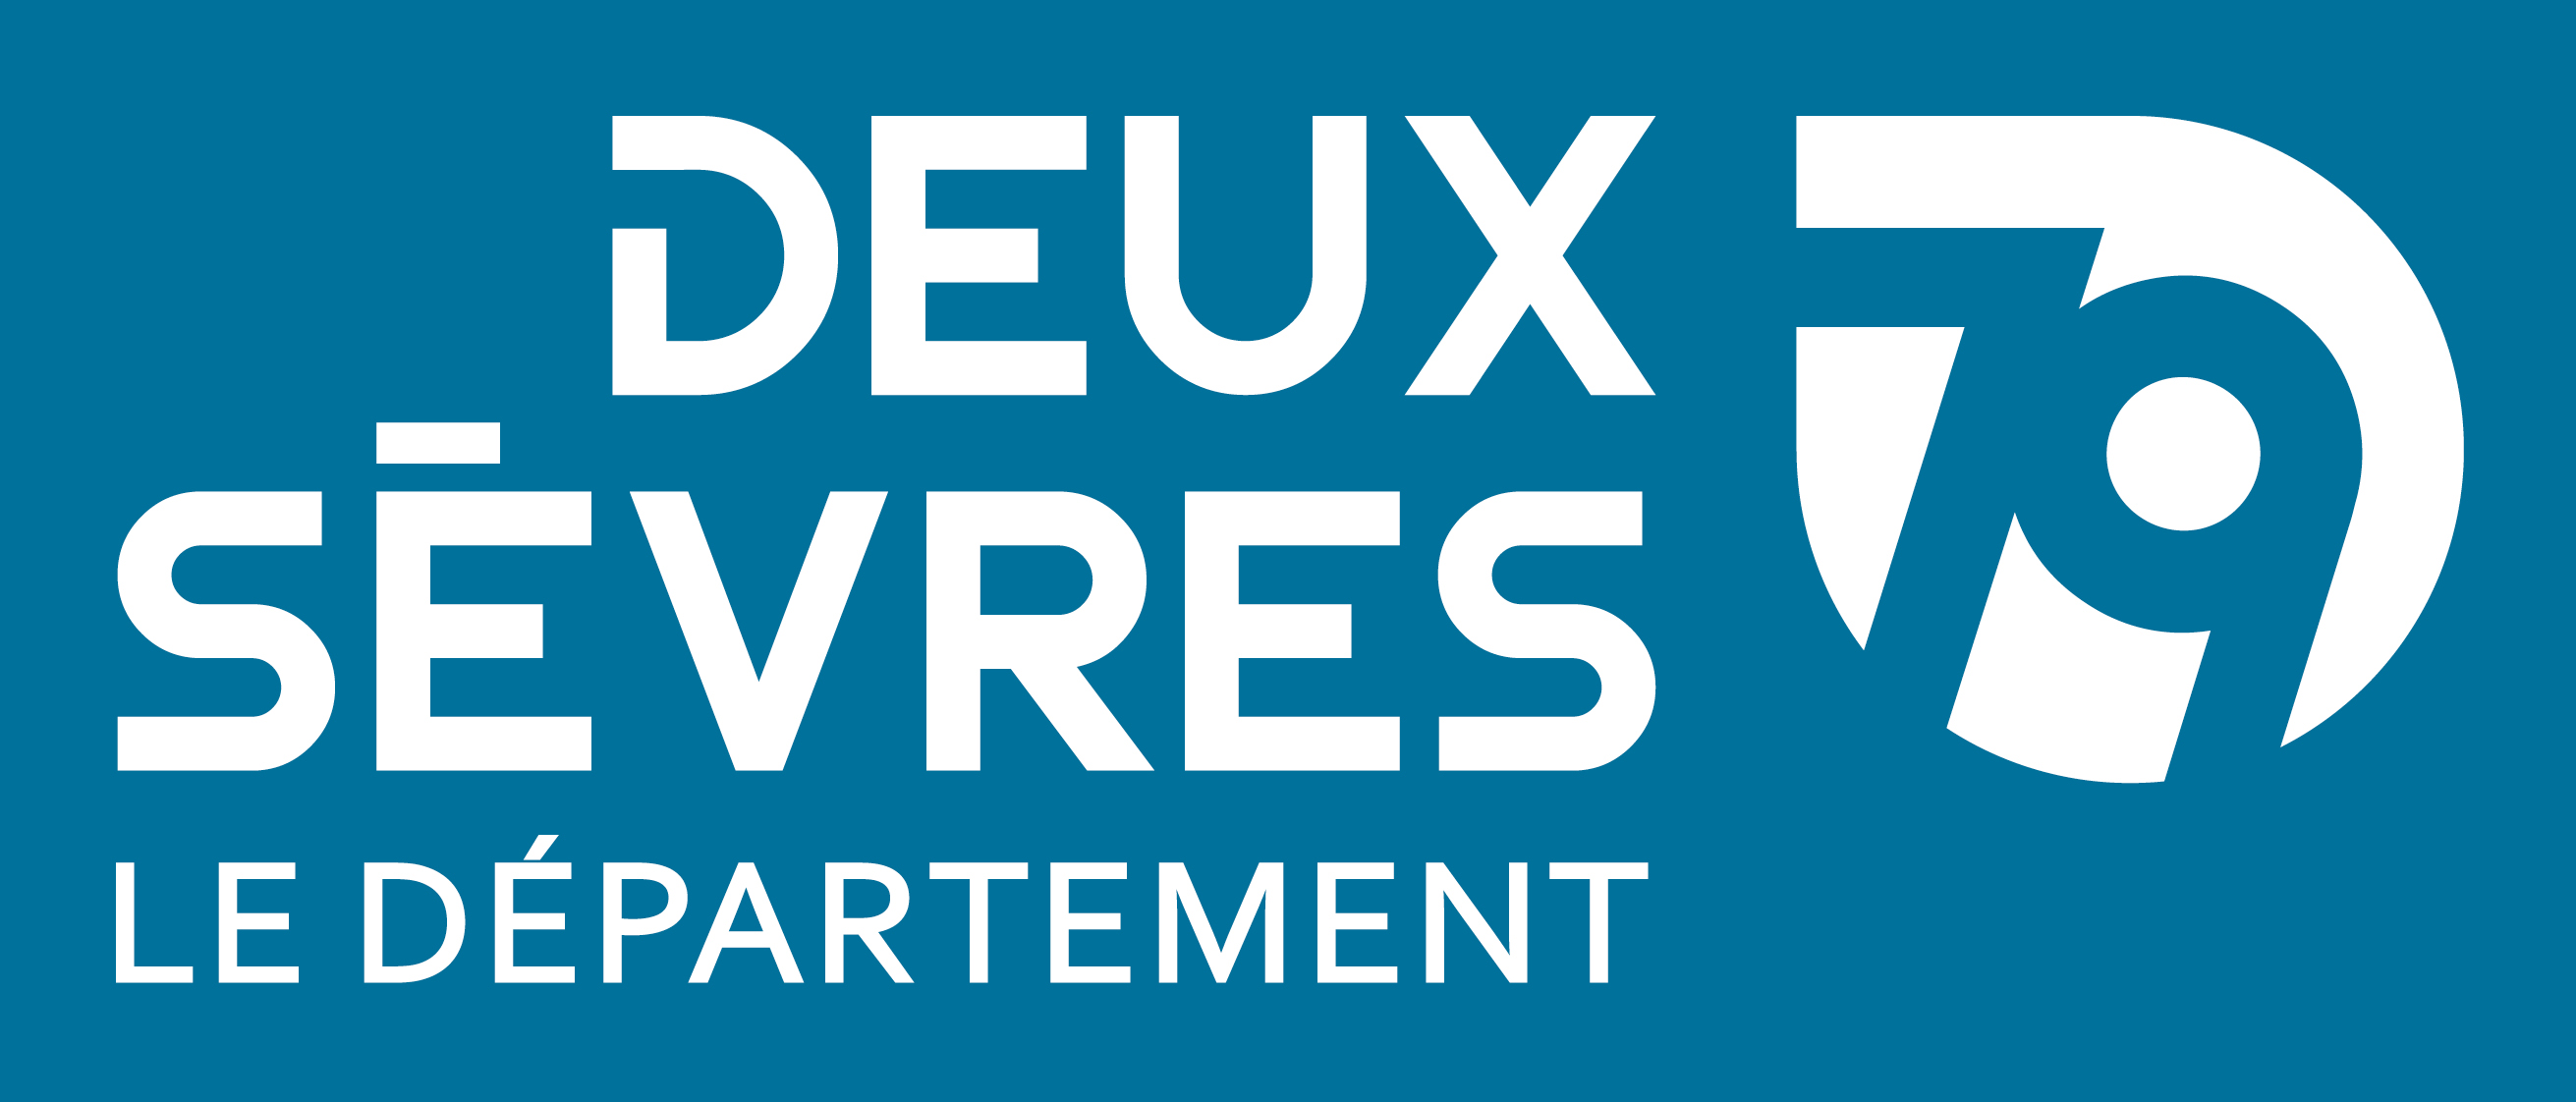 Logo Deux-Sèvres